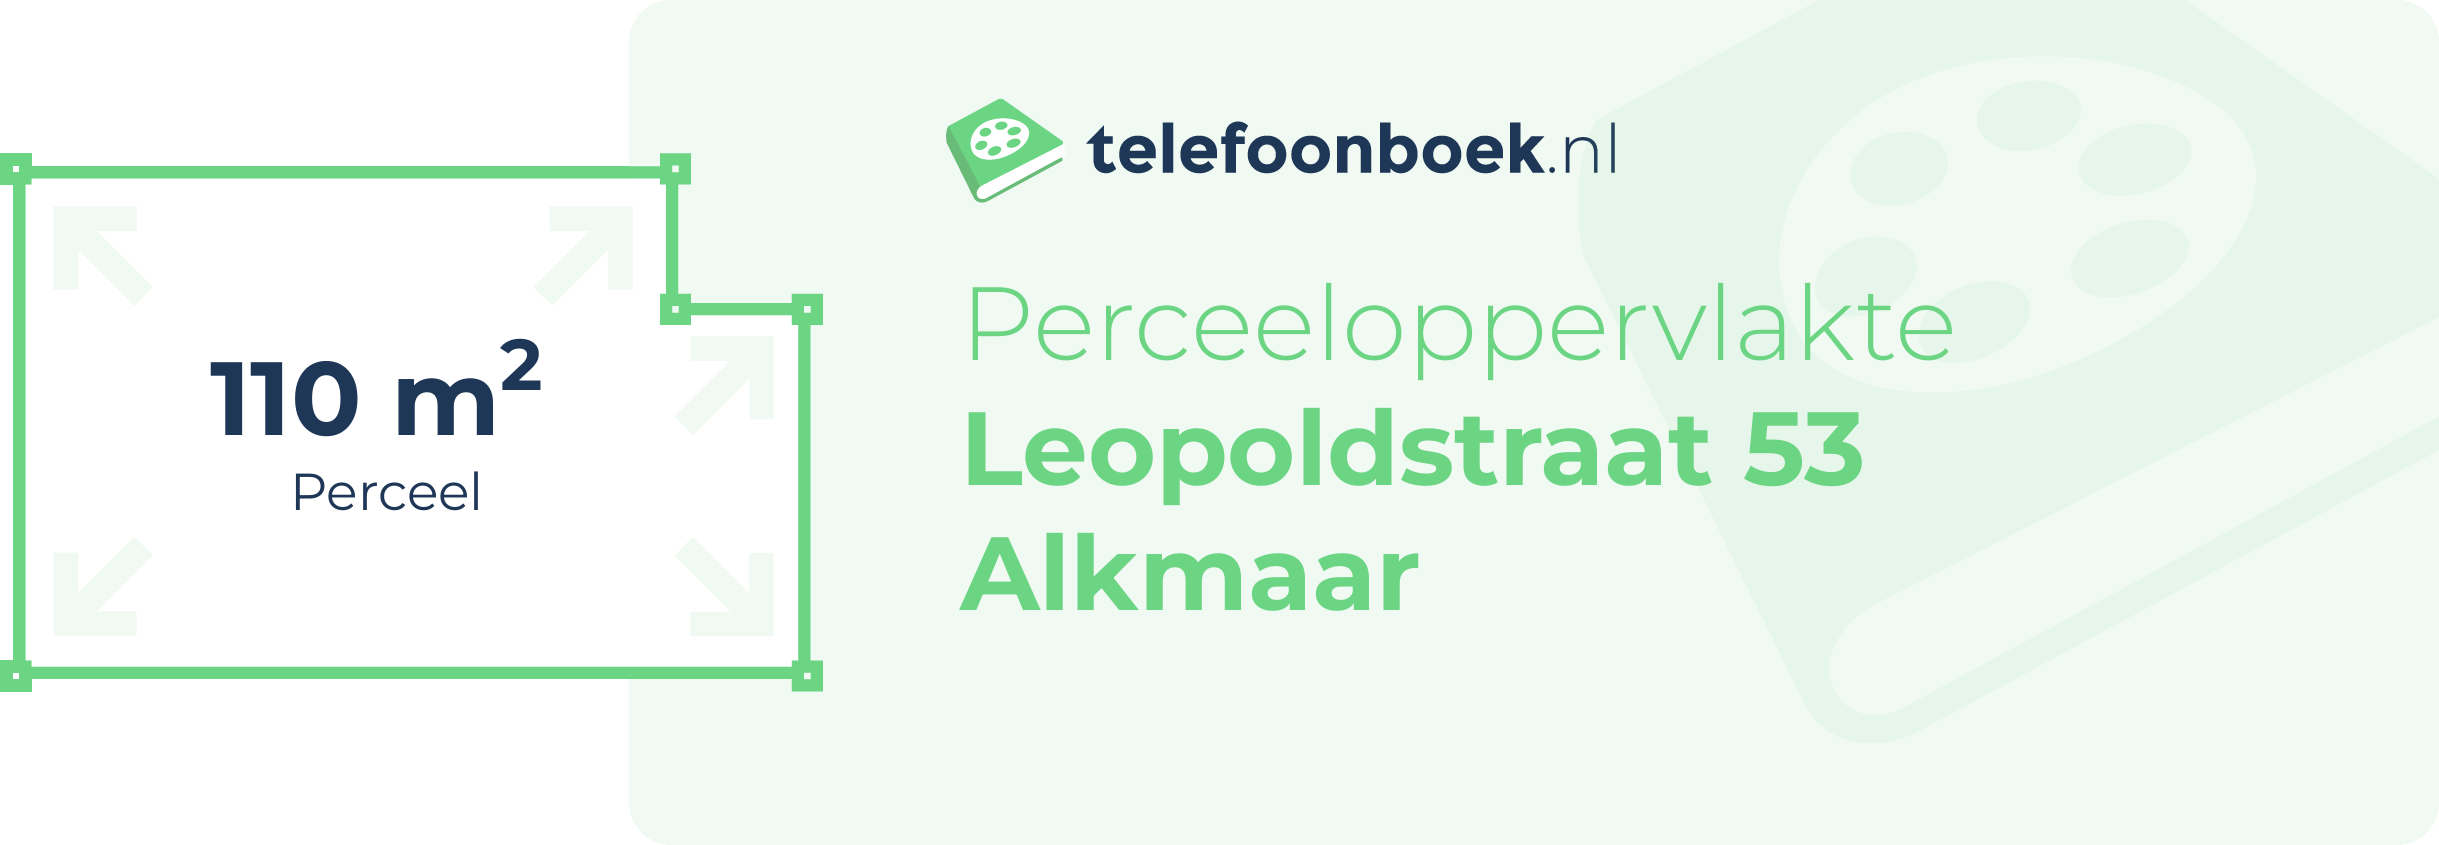 Perceeloppervlakte Leopoldstraat 53 Alkmaar